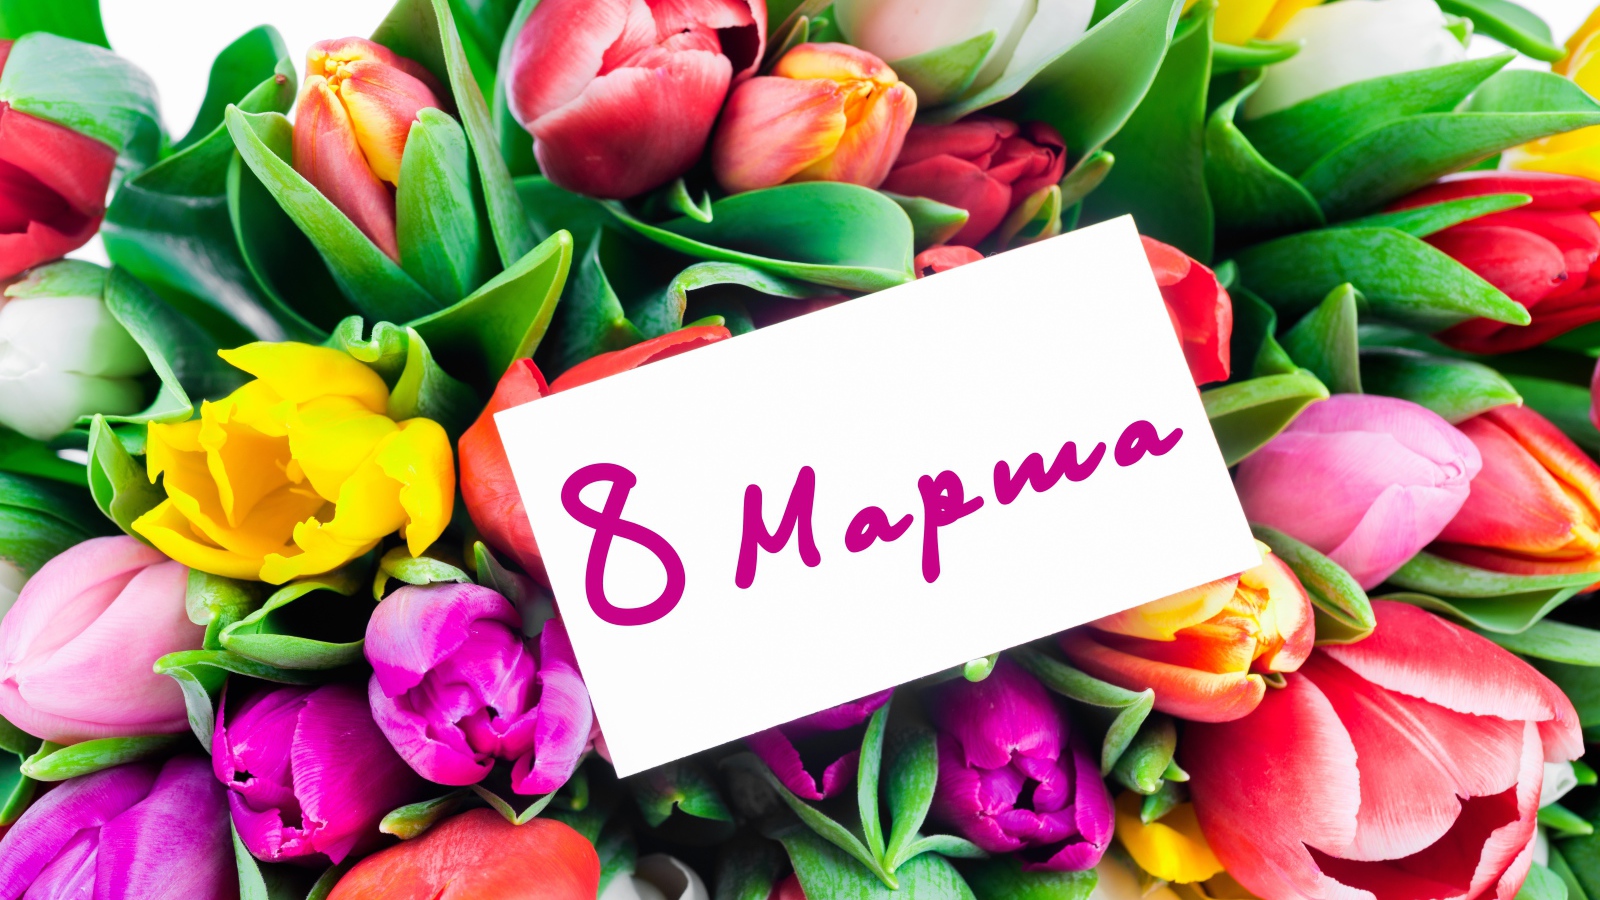 Красивый букет разноцветных тюльпанов на Международный Женский день 8 марта